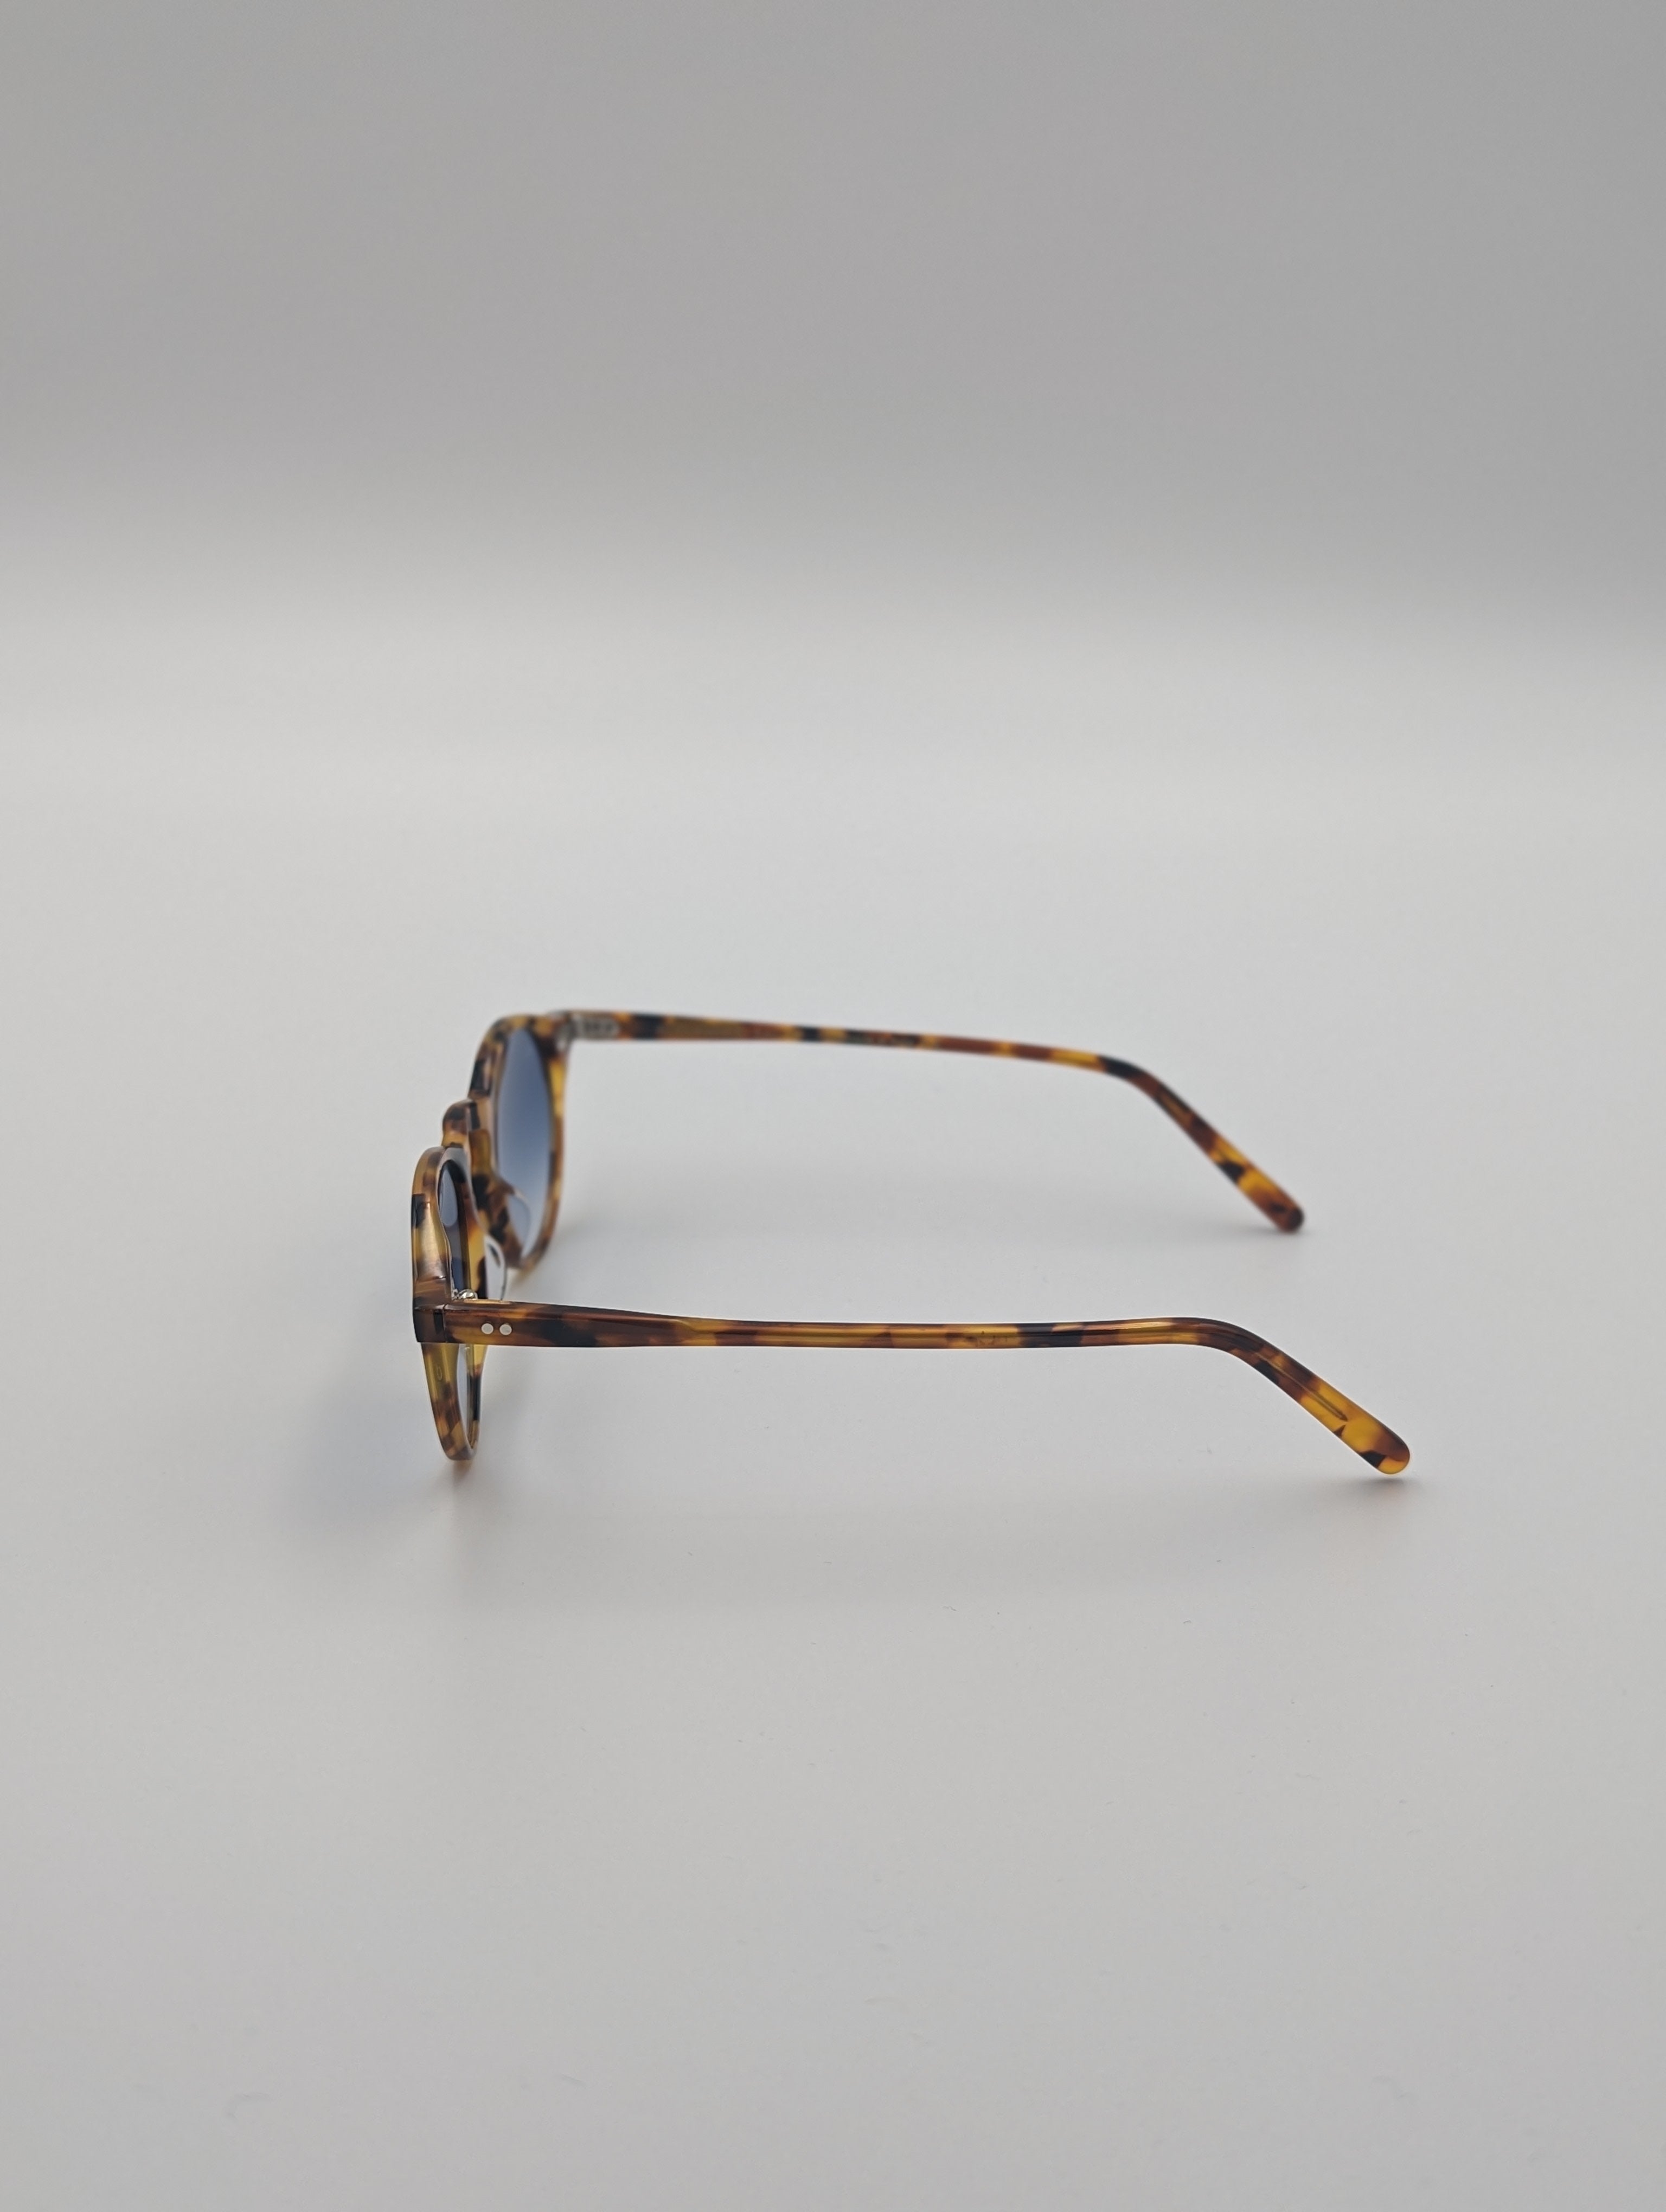 Sunglasses Classic - Wasp